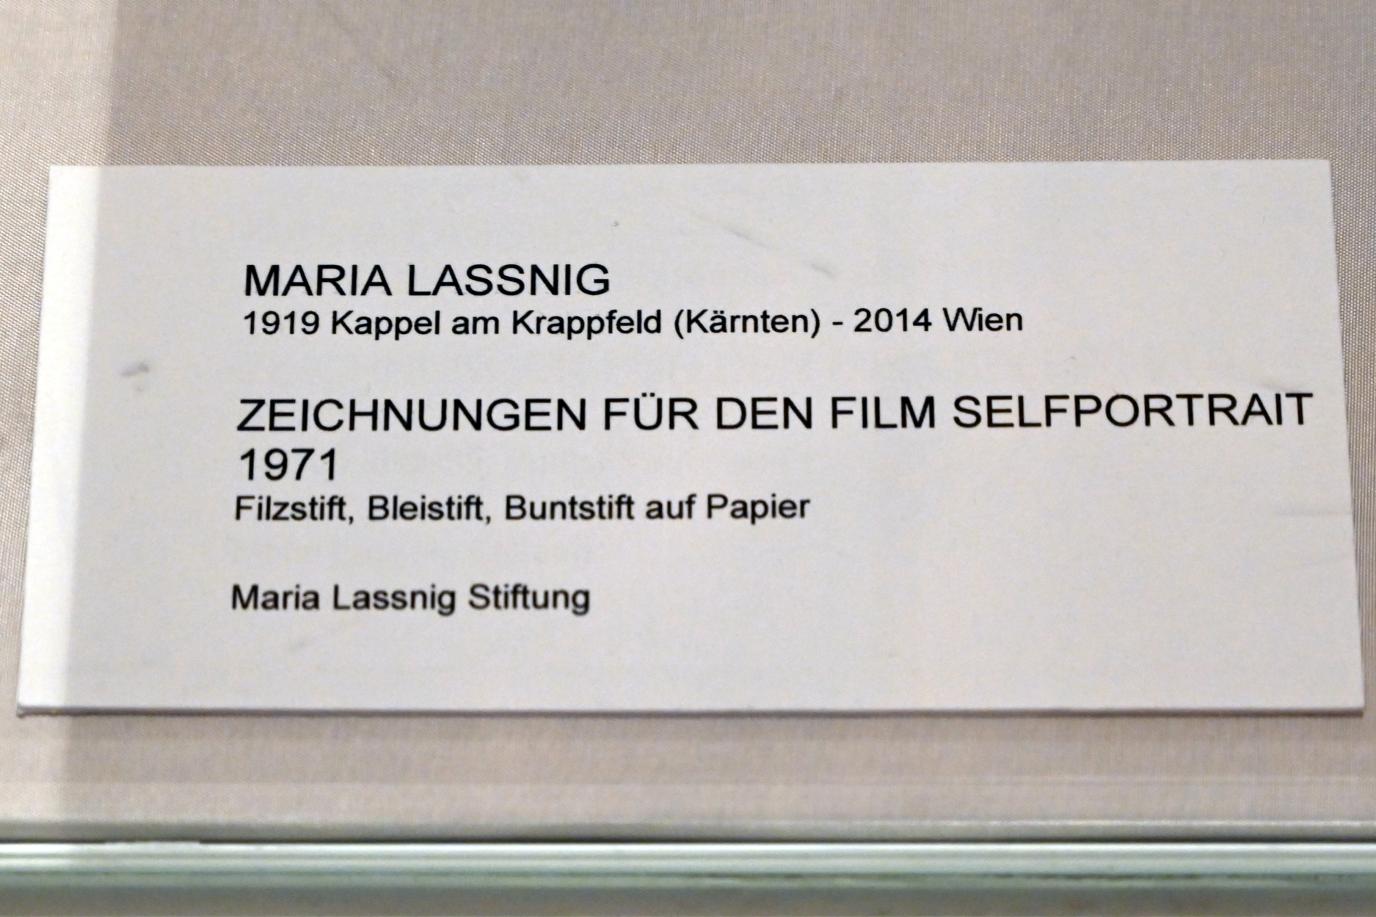 Maria Lassnig (1945–2011), Zeichnungen für den Film Selfportrait, Bonn, Kunstmuseum, Ausstellung "Maria Lassnig - Wach bleiben" vom 10.02. - 08.05.2022, Saal 6, 1971, Bild 3/3